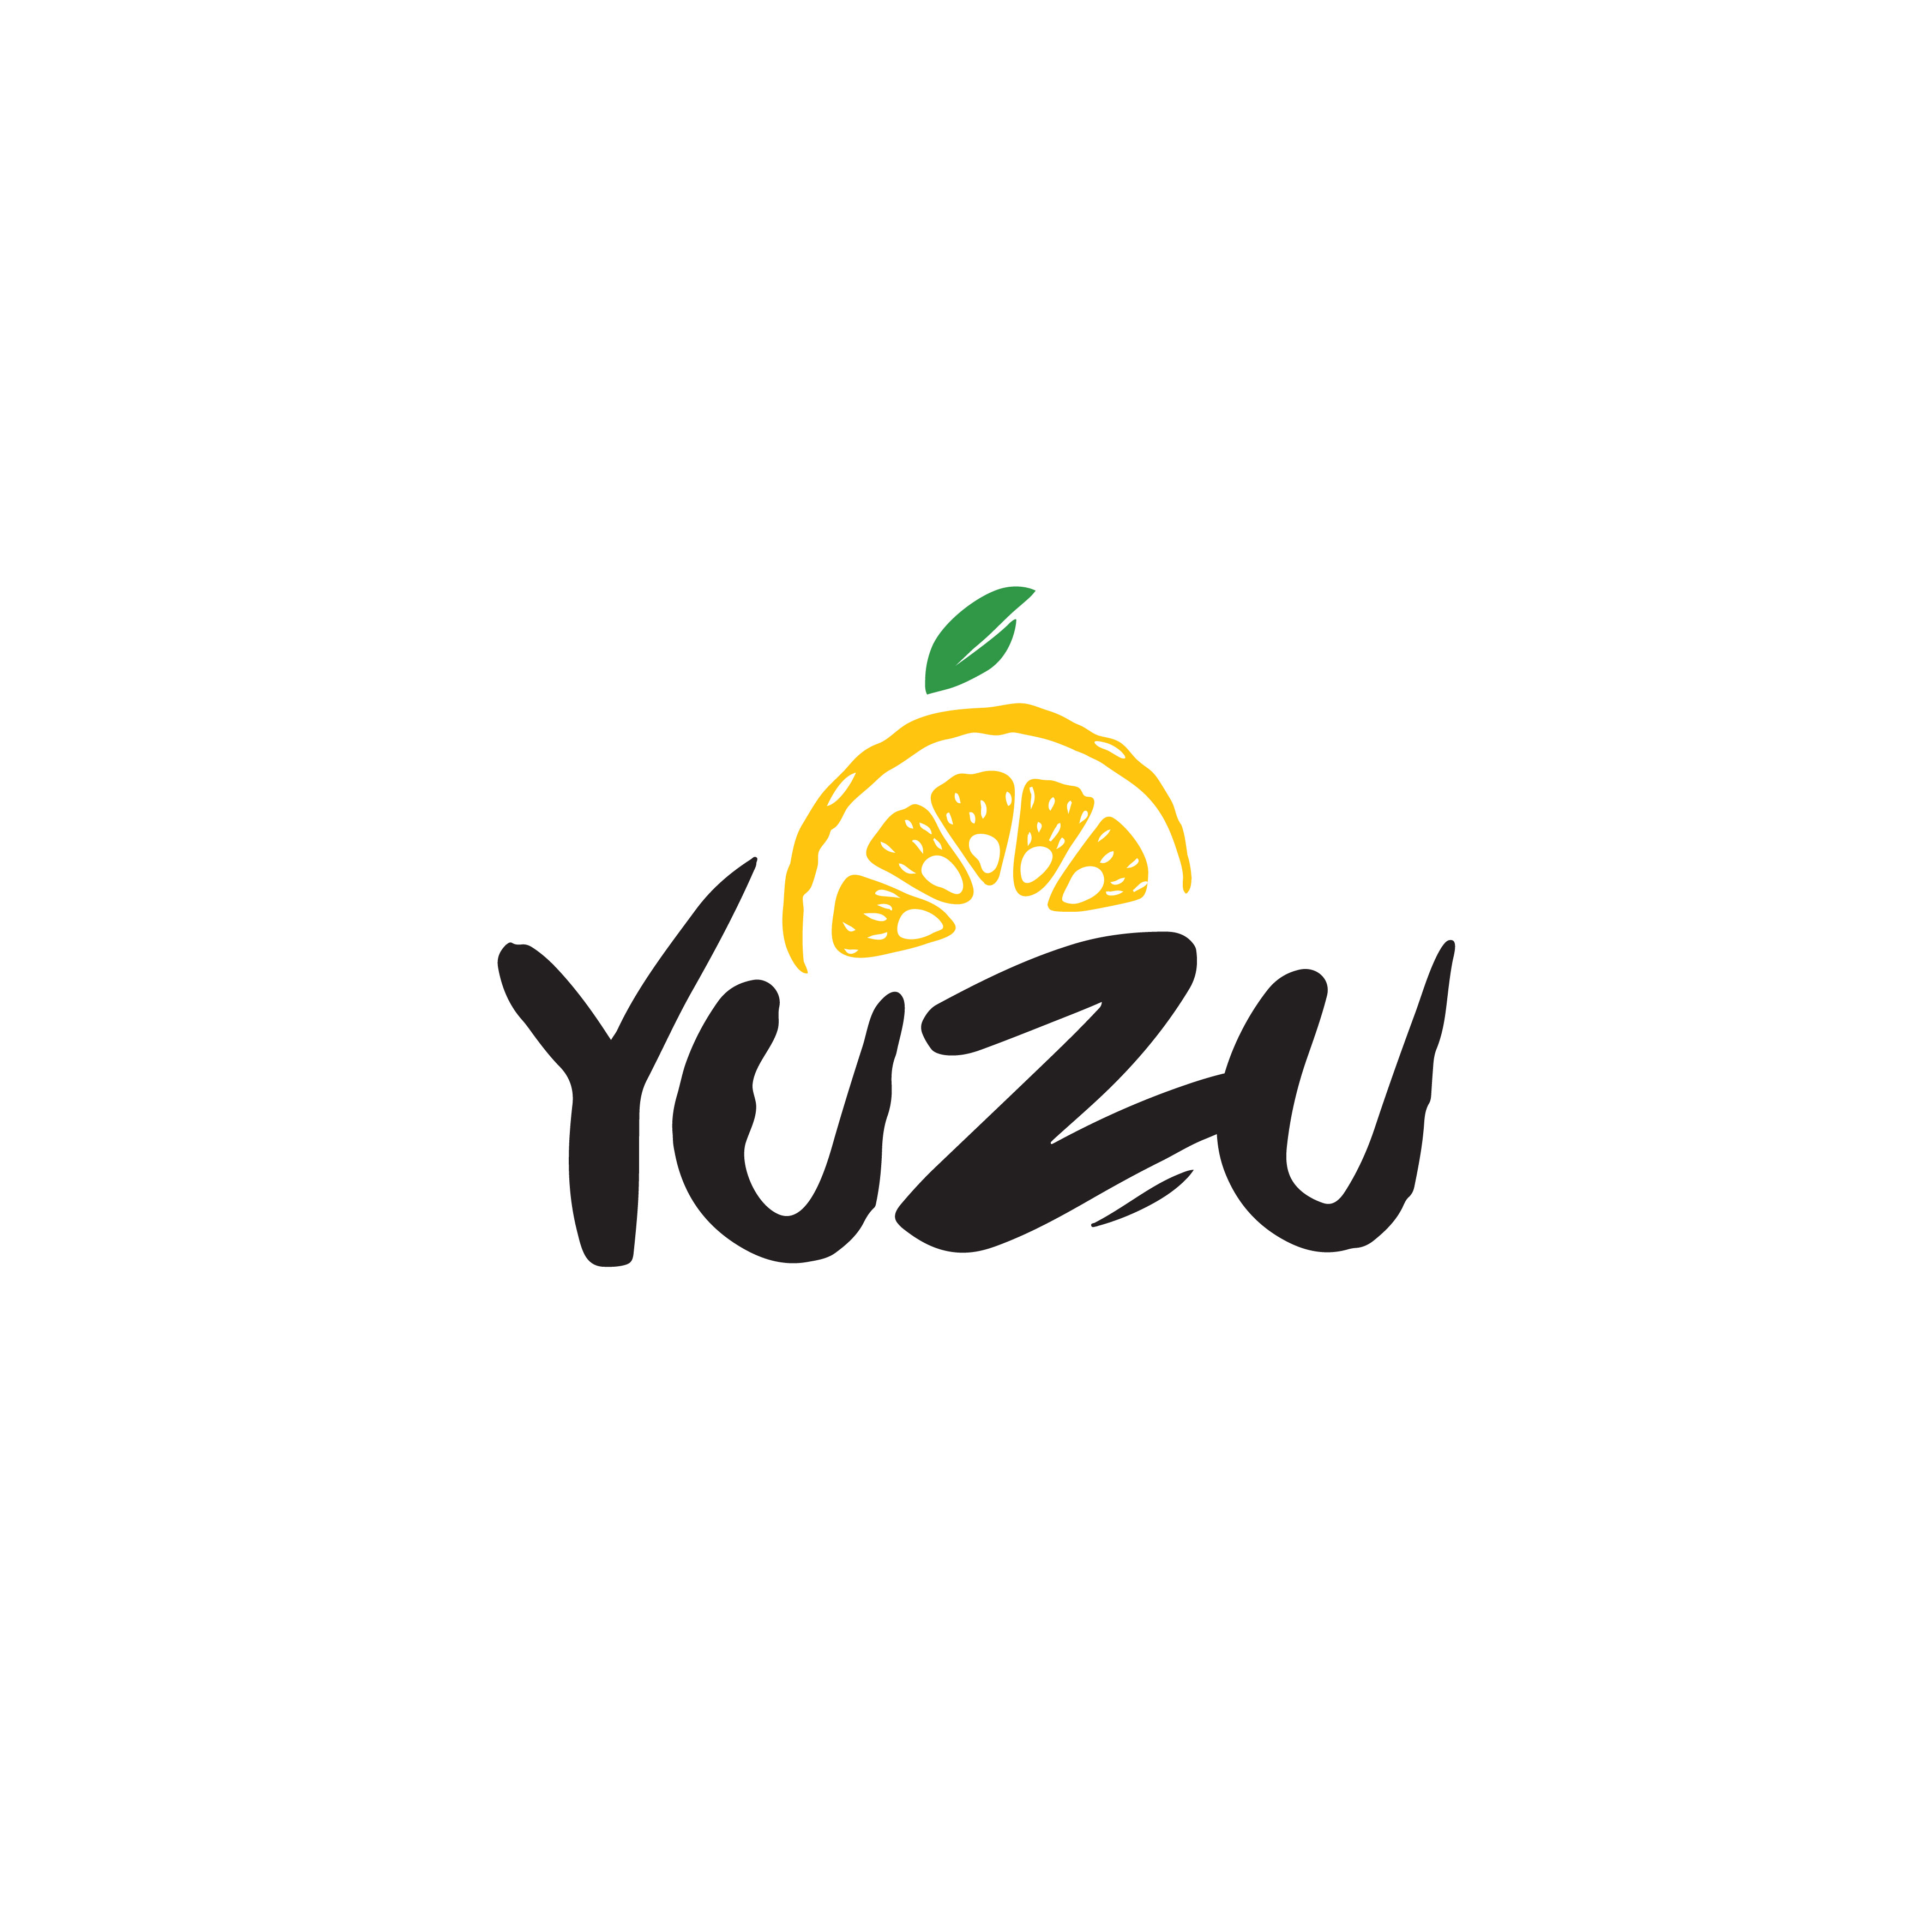 yuzu indonesia